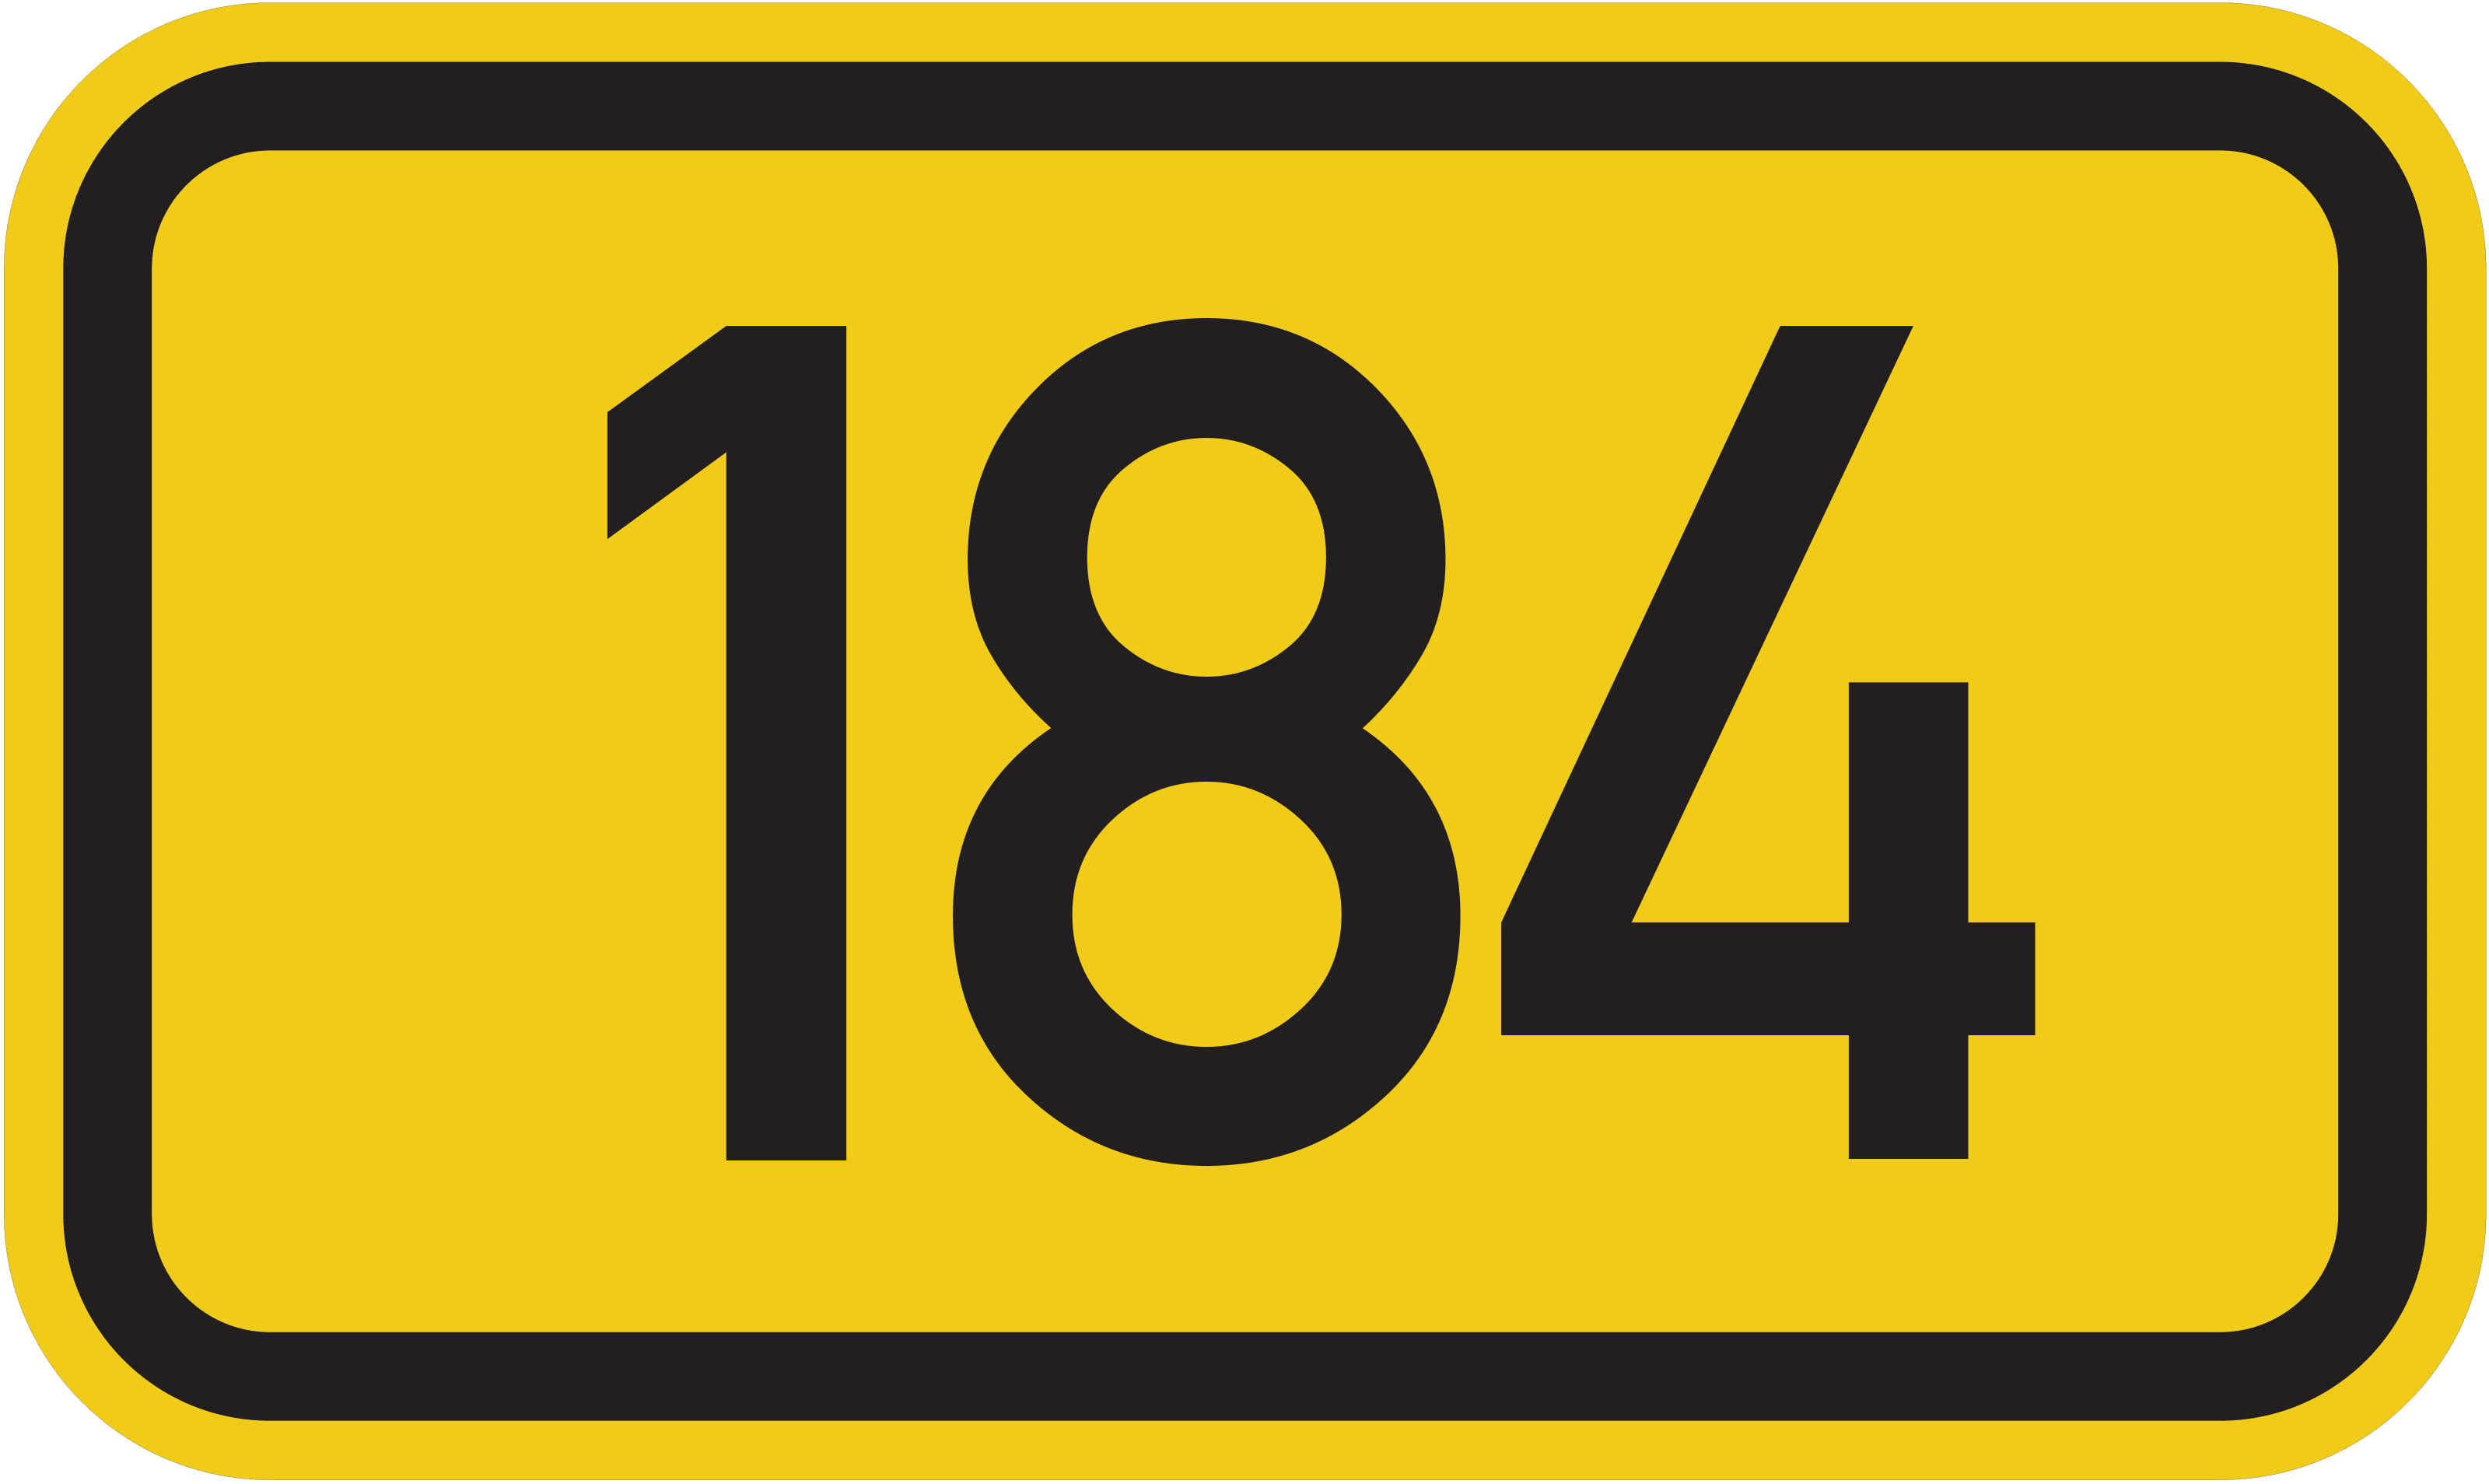 Bundesstraße B 184